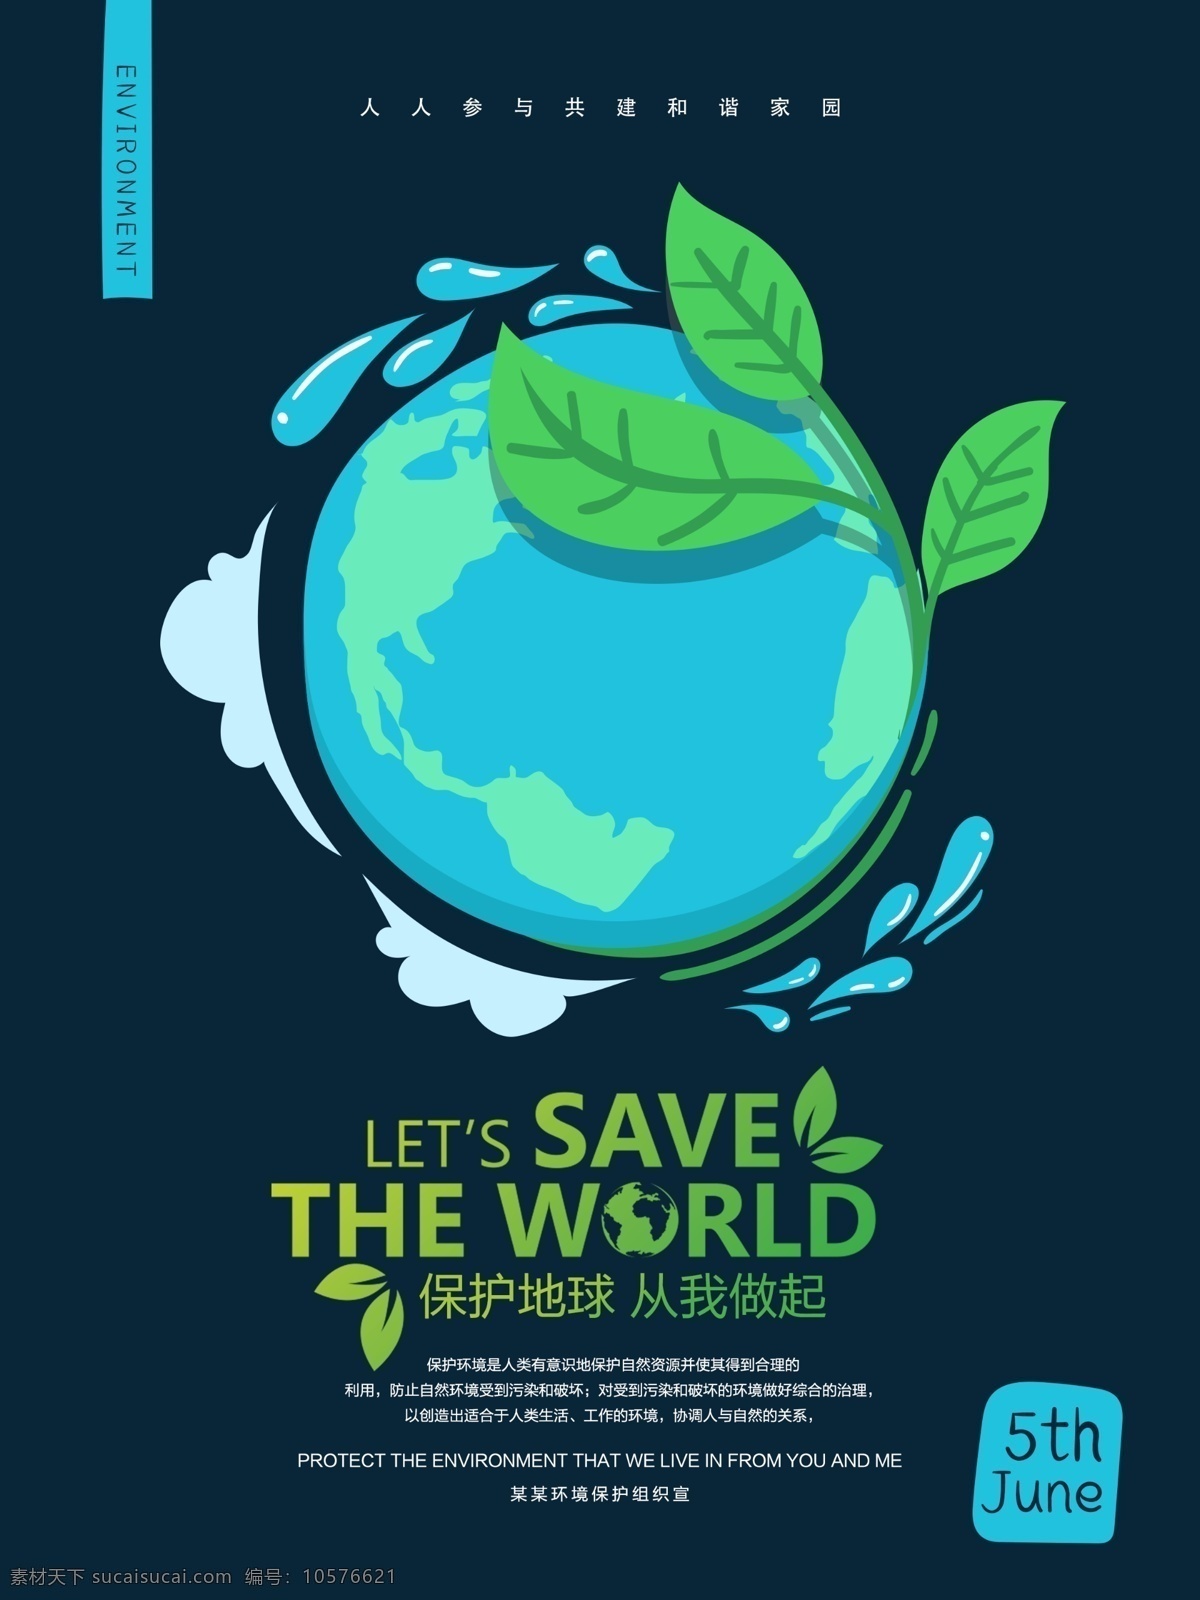 简约 平面 保护 地球 环保 公益 海报 保护环境 保护地球 爱护环境 环境保护 绿色 植物 低碳 低碳生活 生态保护 环境 公益海报